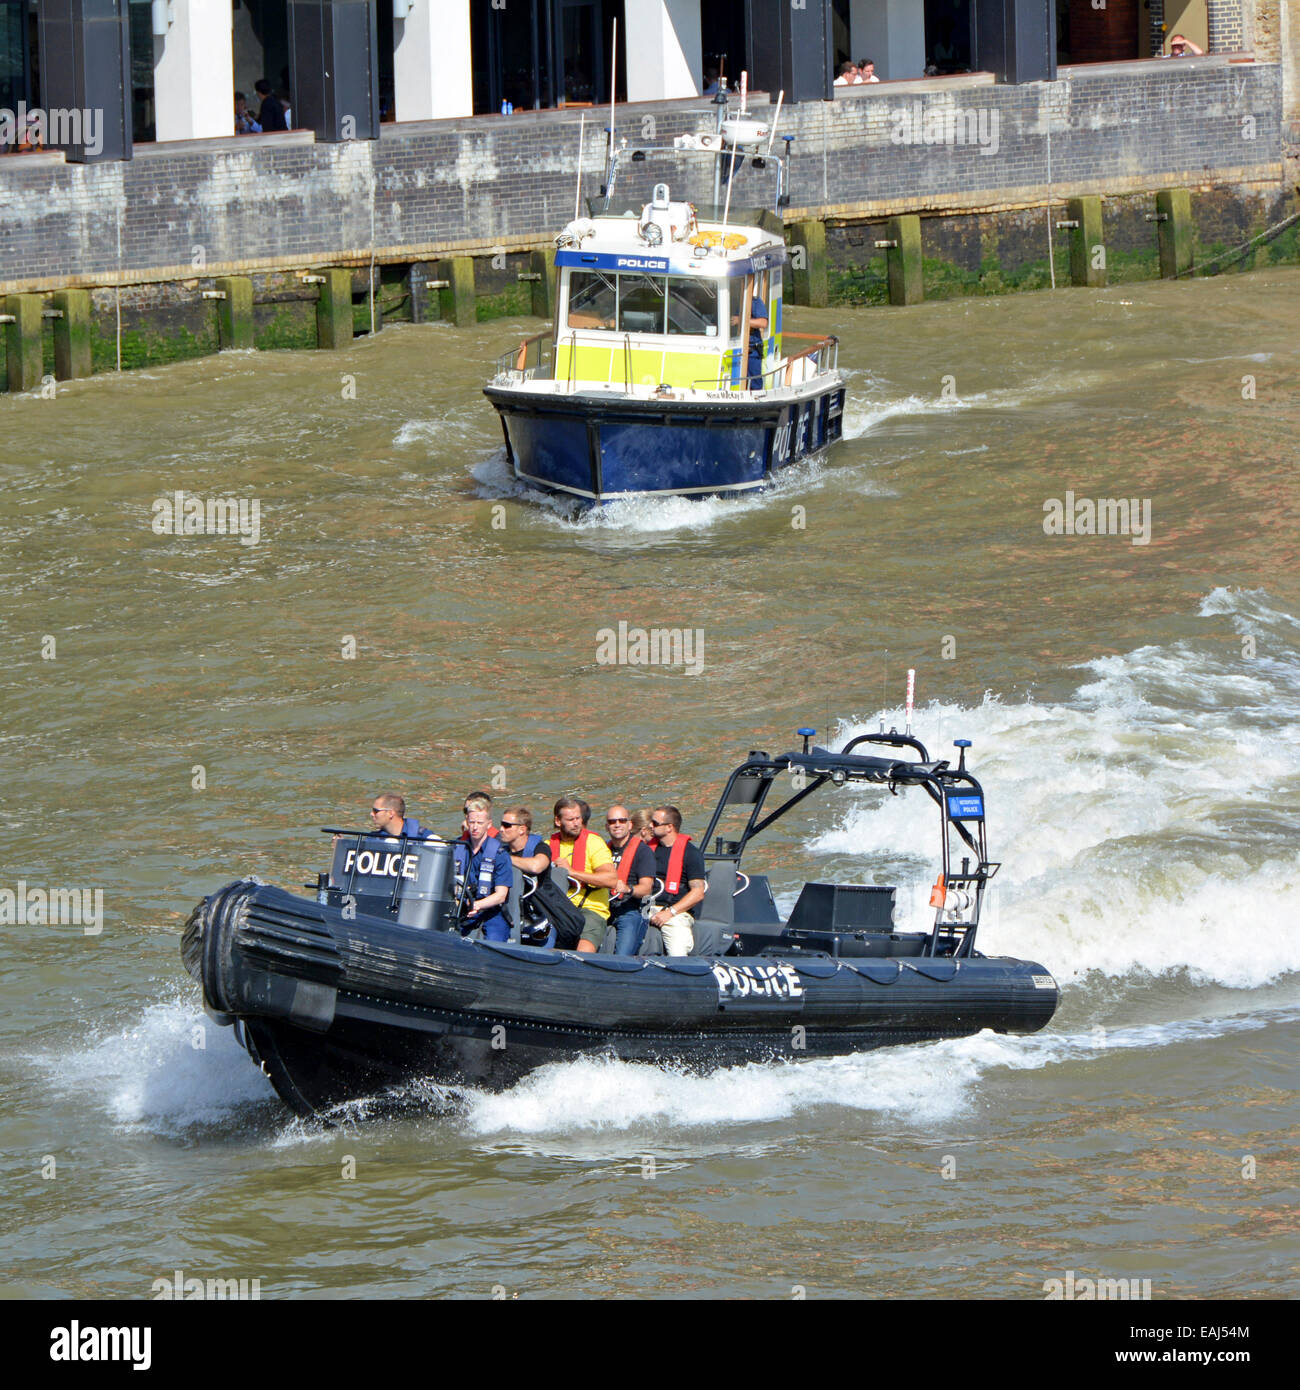 Metropolitan Police vitesse gonflable bateau avec bateau de patrouille classiques sur la Tamise Banque D'Images